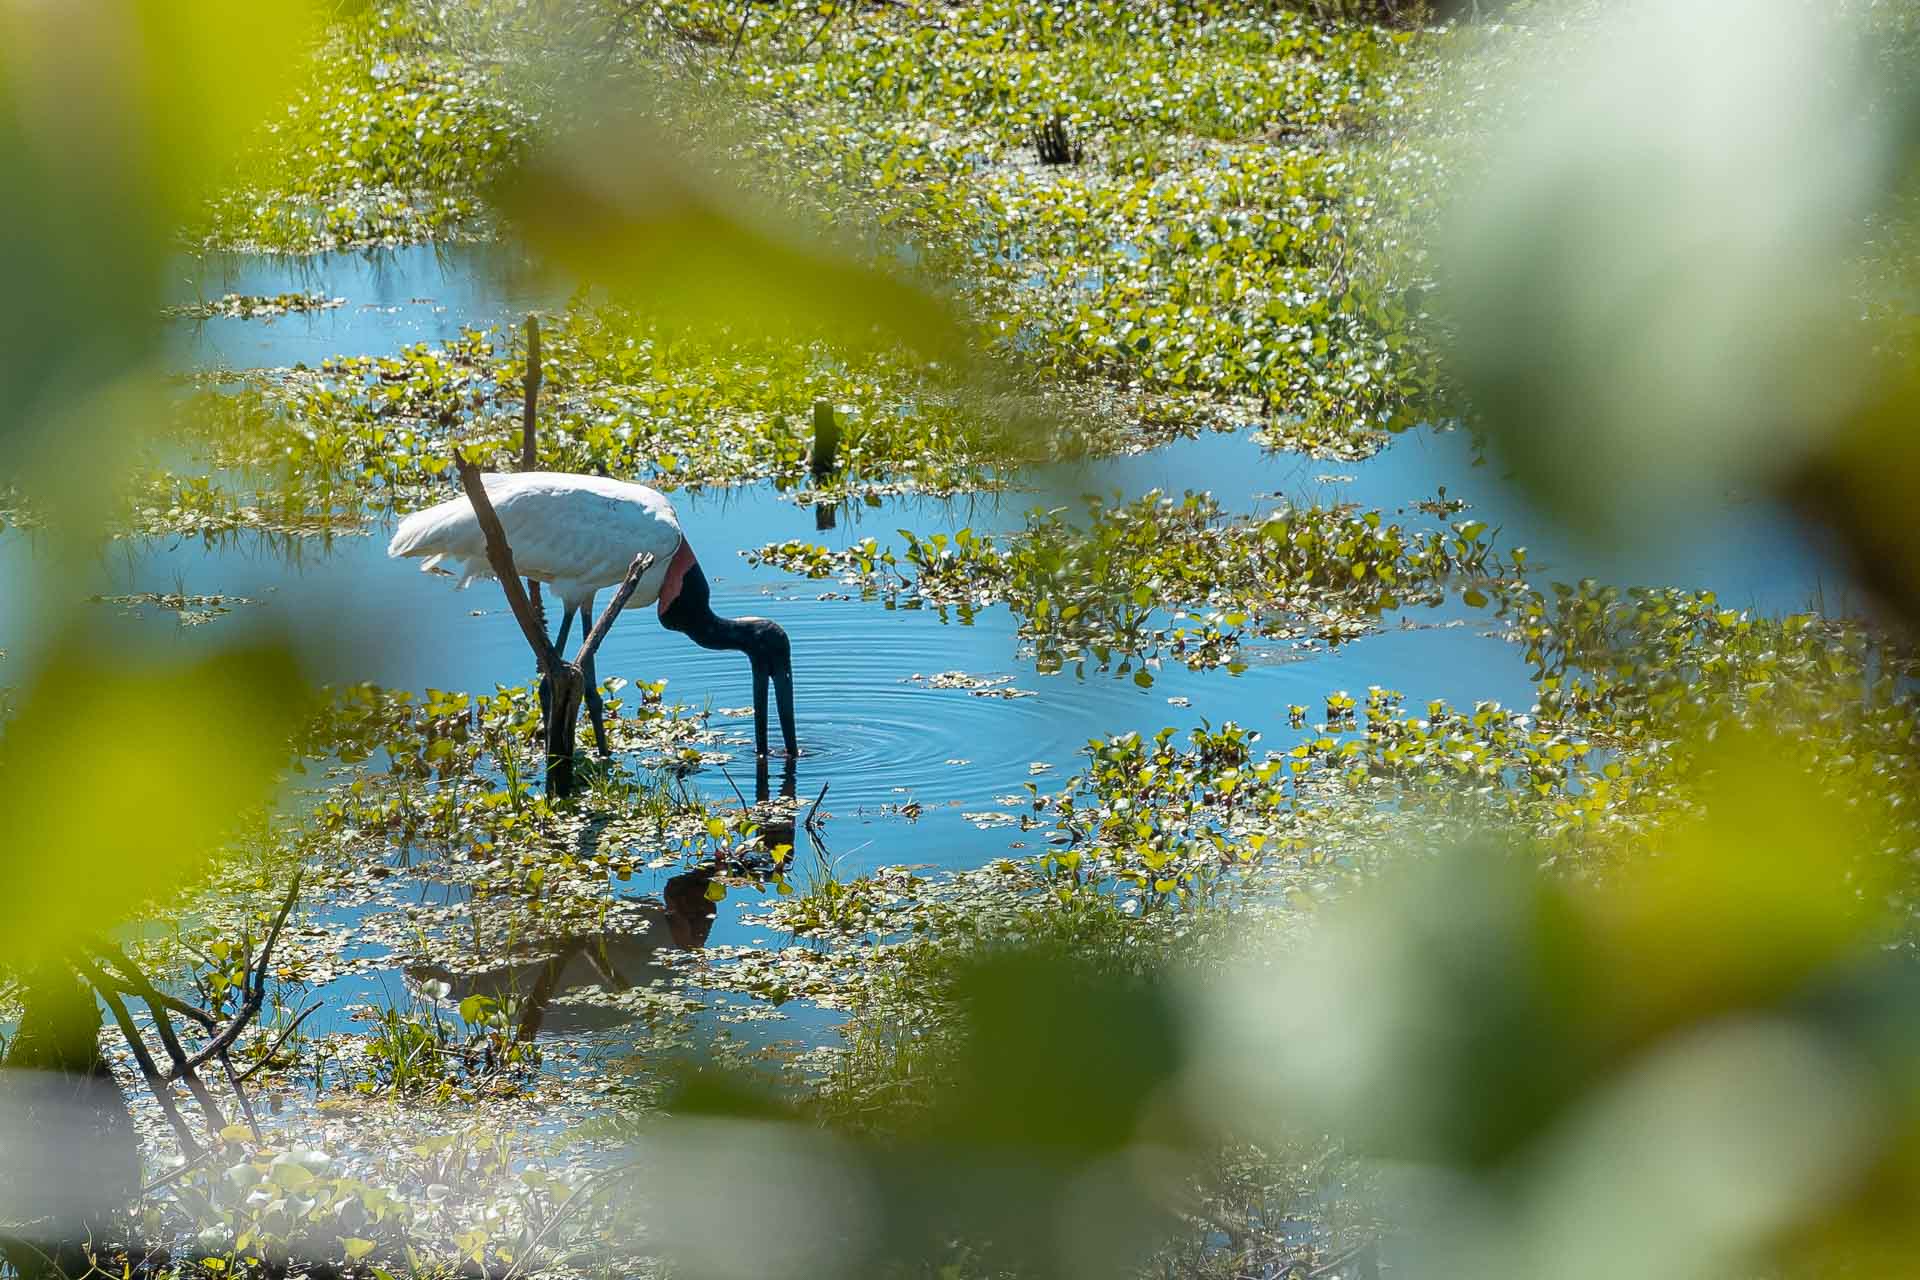 Tuiuiu, o pássaro simbolo do Pantanal